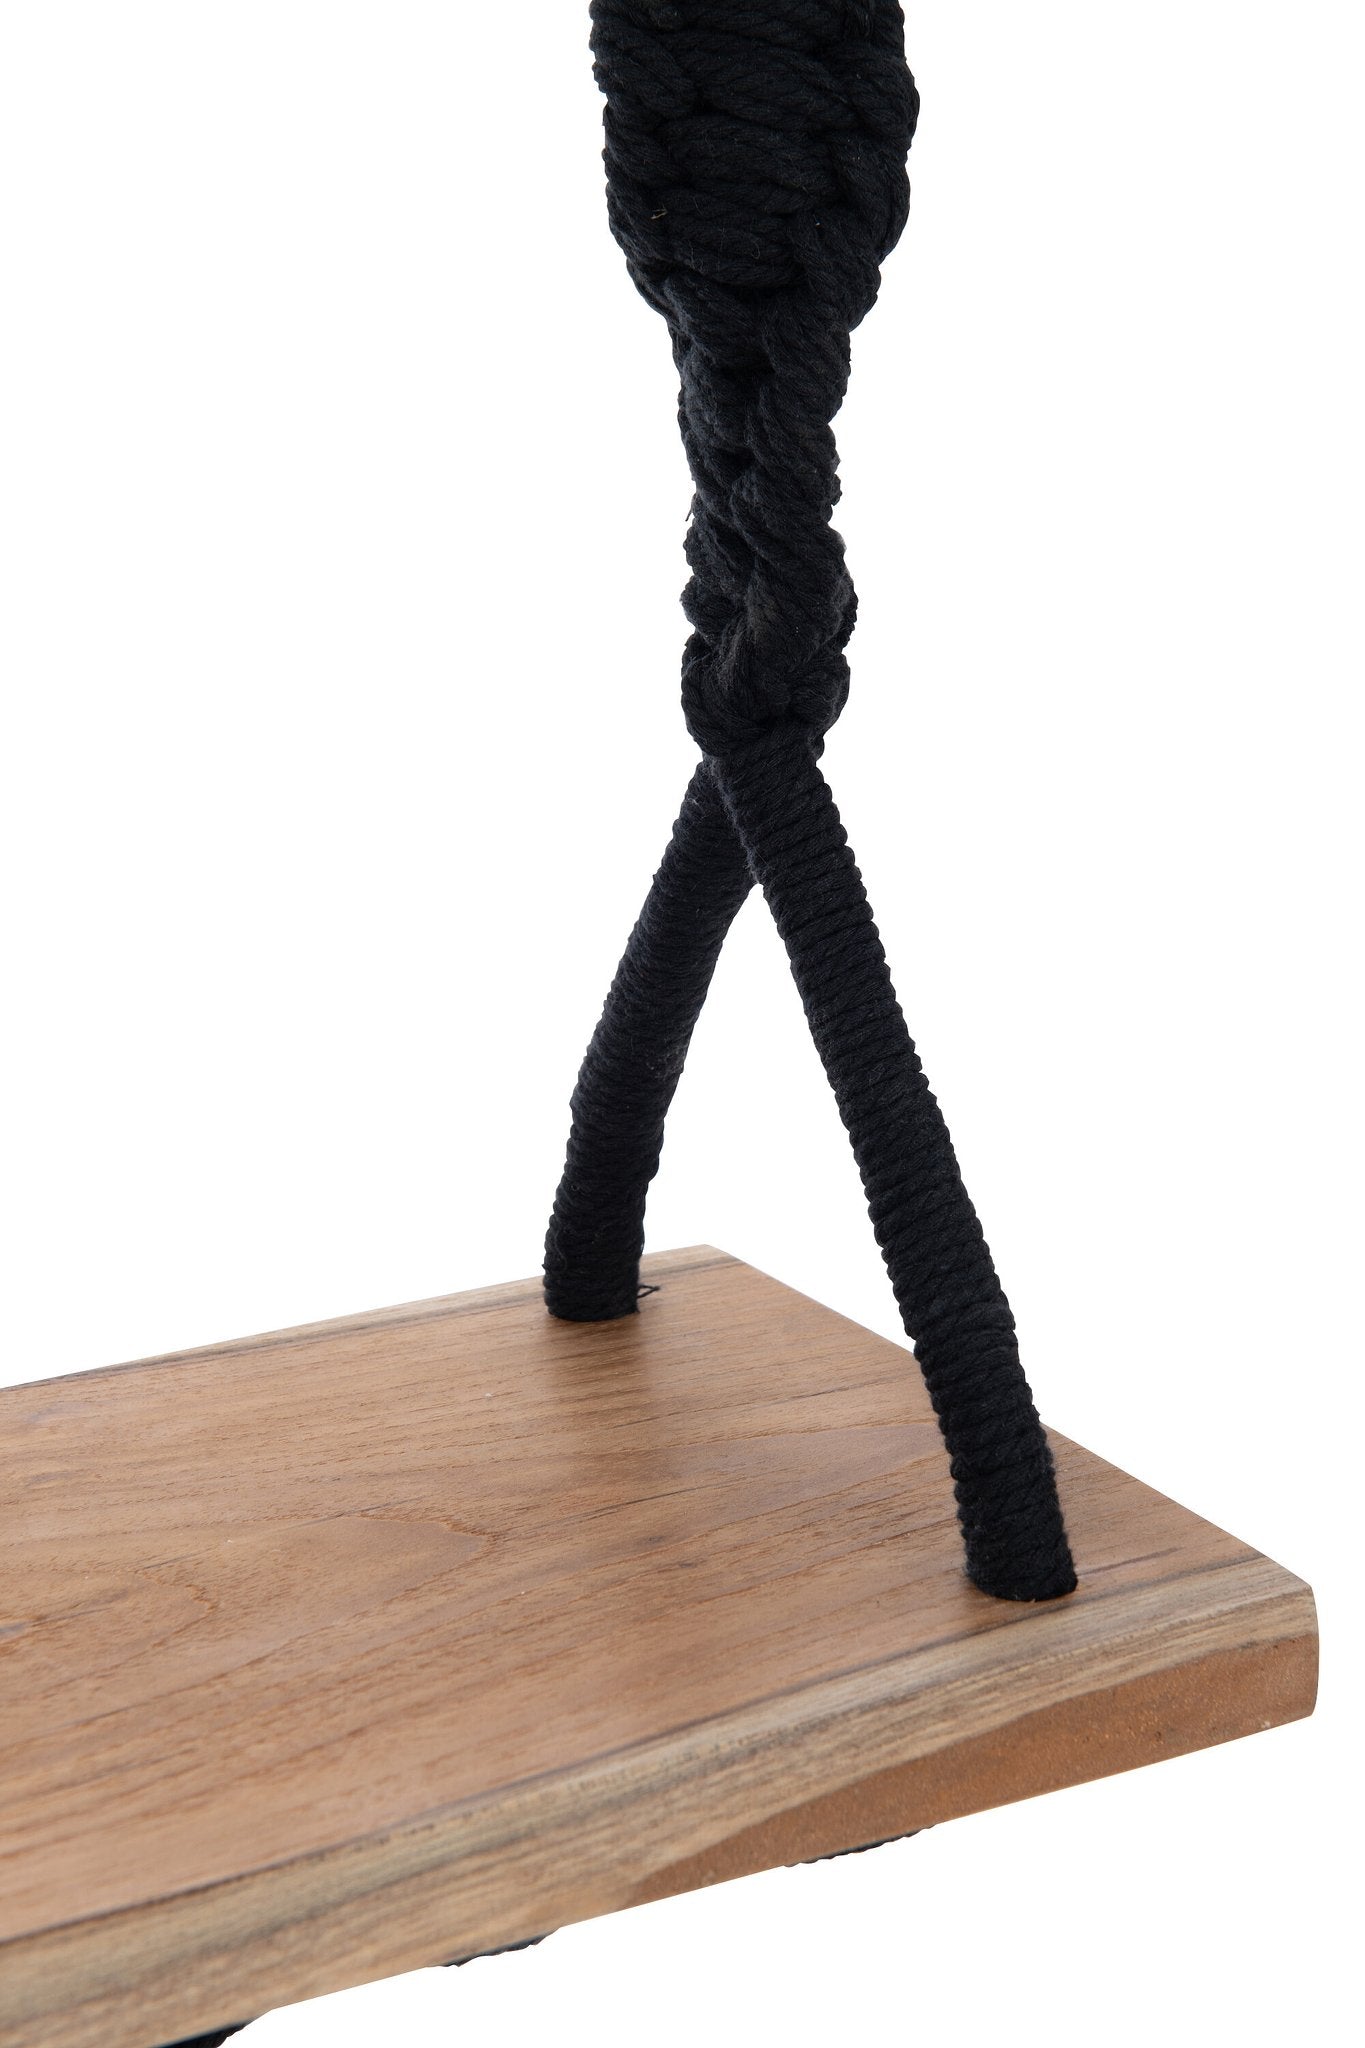 J-Line schommelstoel - katoen/alabasia hout - zwart